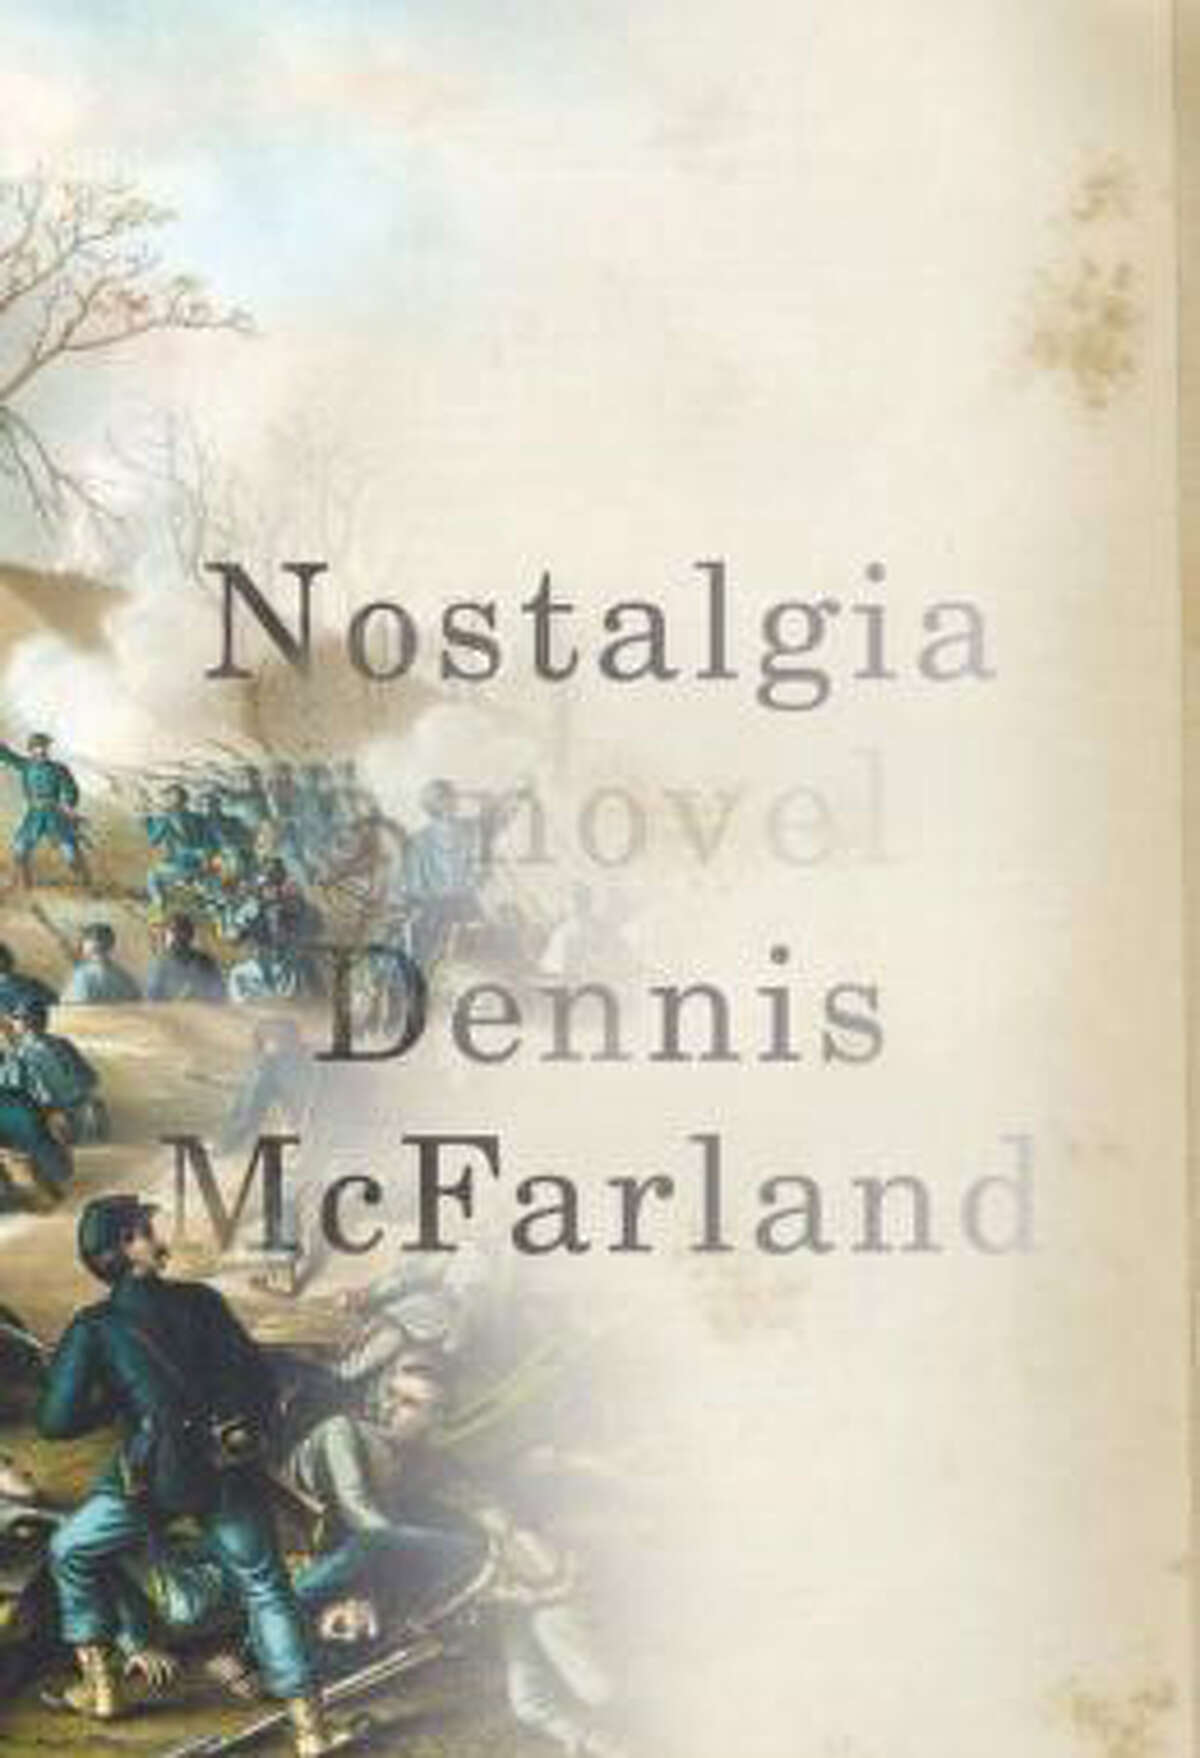 Dennis McFarland's “Nostalgia”  is a Civil War novel about a soldier's internal battles.